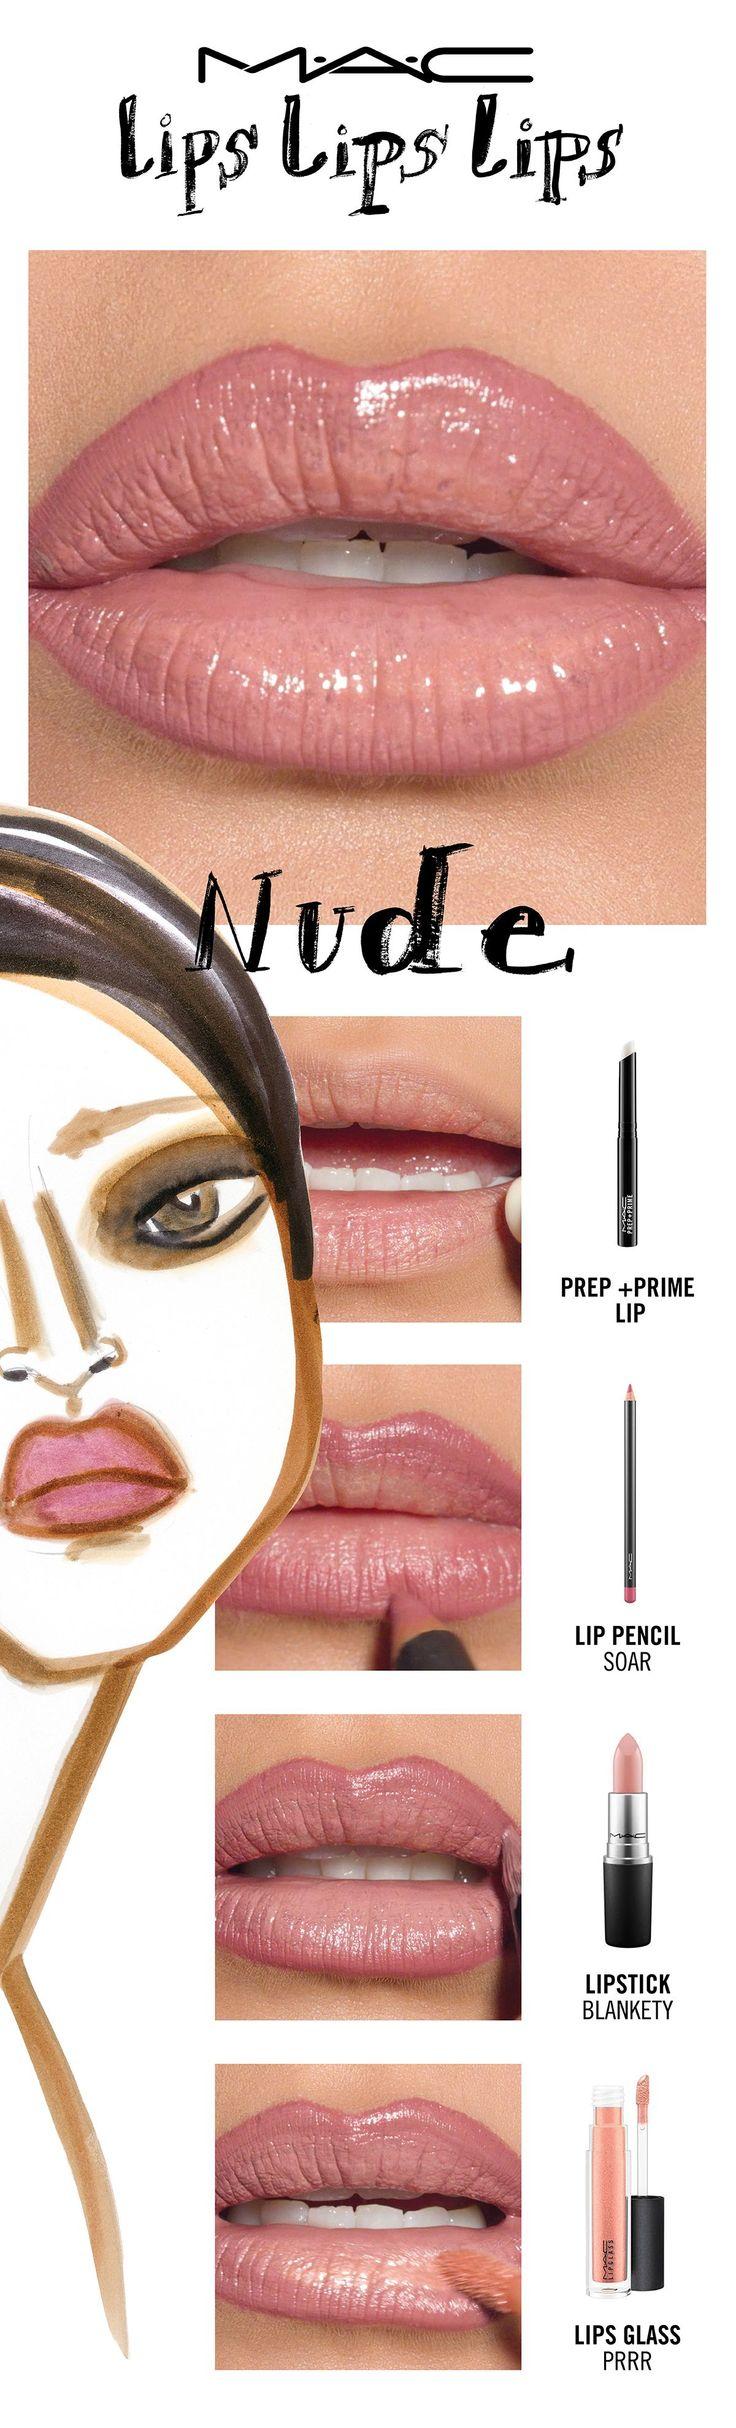 Wedding - Lips Lips Lips Trend: Nude Page